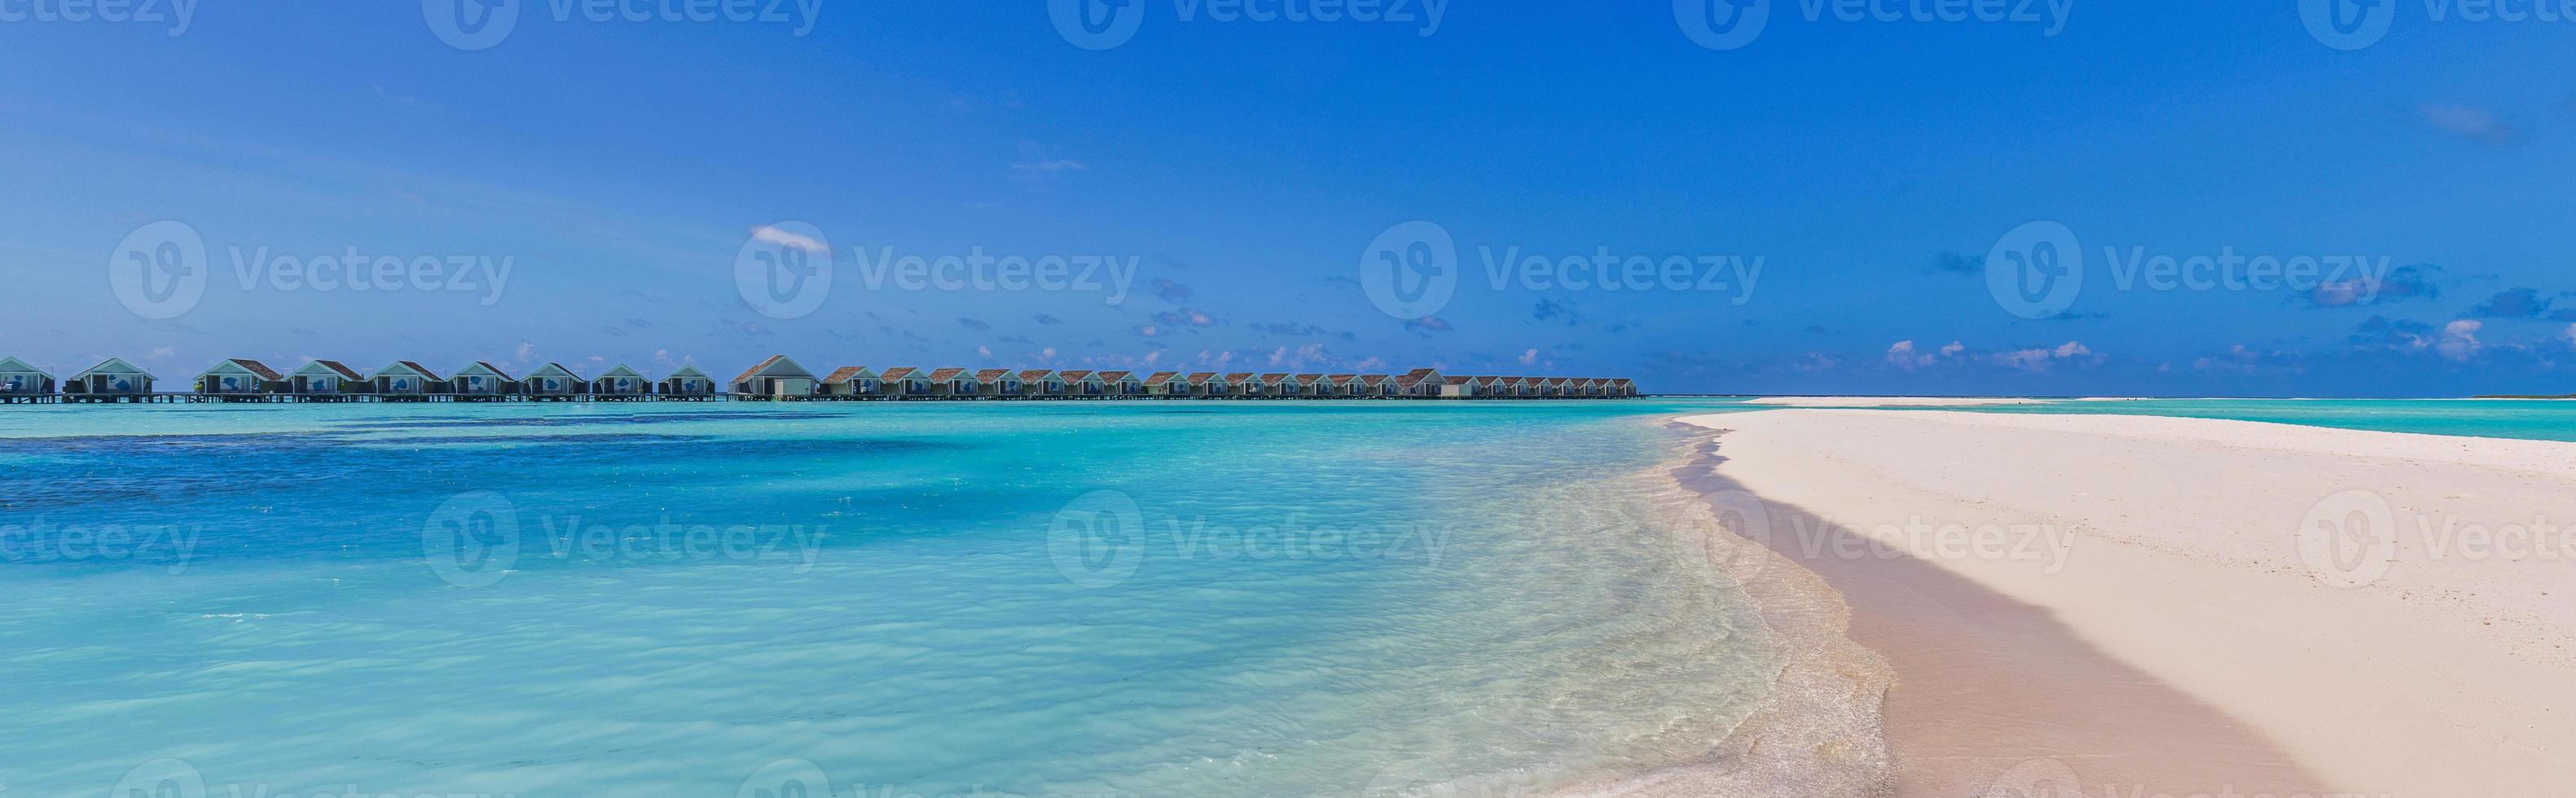 hermoso paisaje panorámico de villas sobre el agua, isla de maldivas, océano índico. vacaciones tropicales de lujo, laguna exótica, aguas cristalinas, relajante mar azul cielo. paraíso del turismo de viajes de verano foto